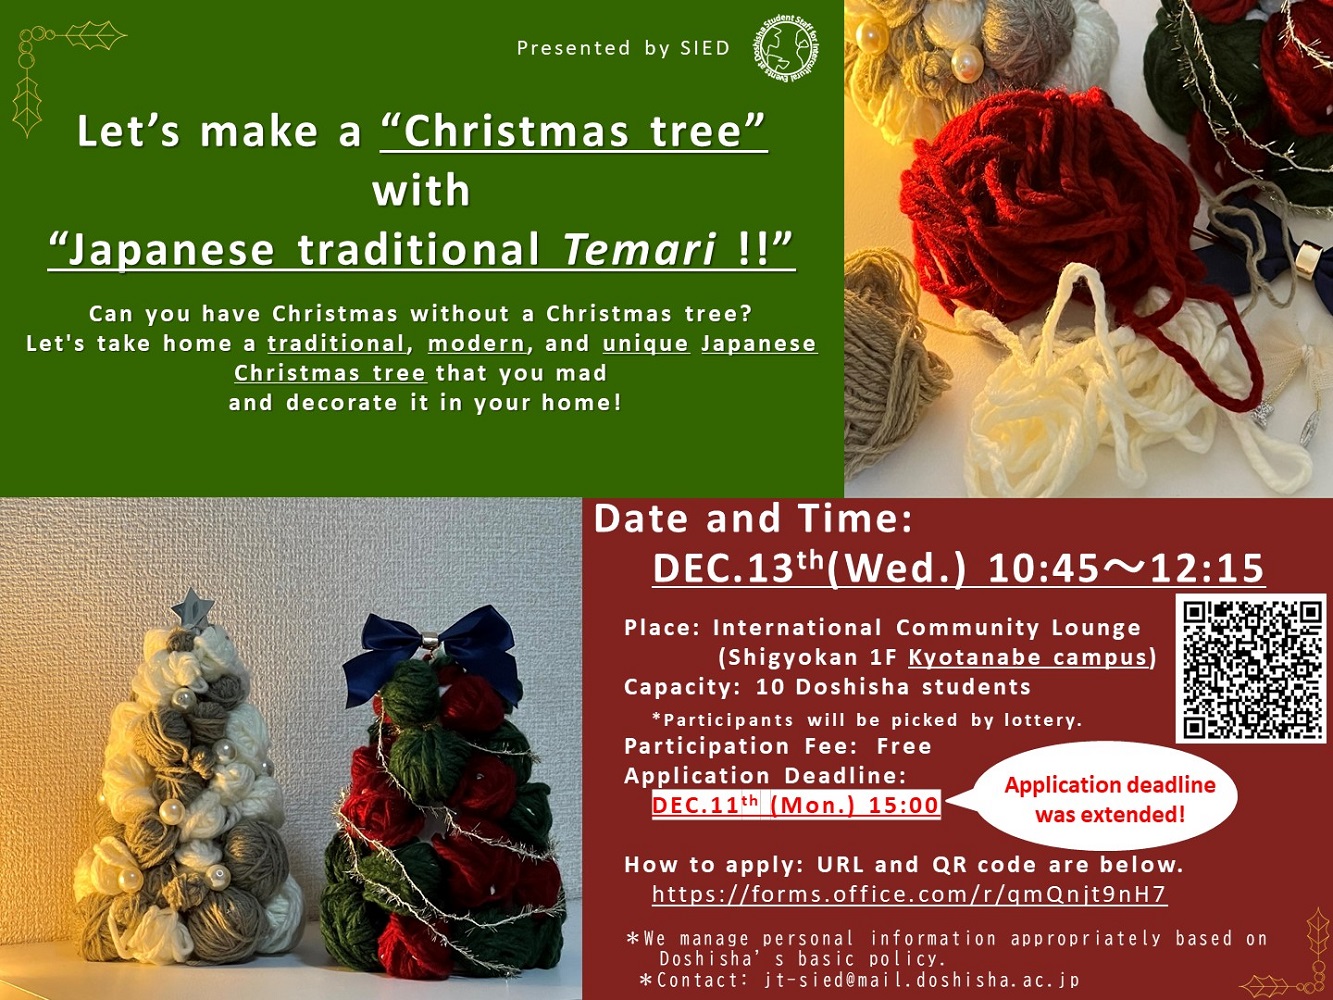 Let's make a 'Christmas tree with Temari